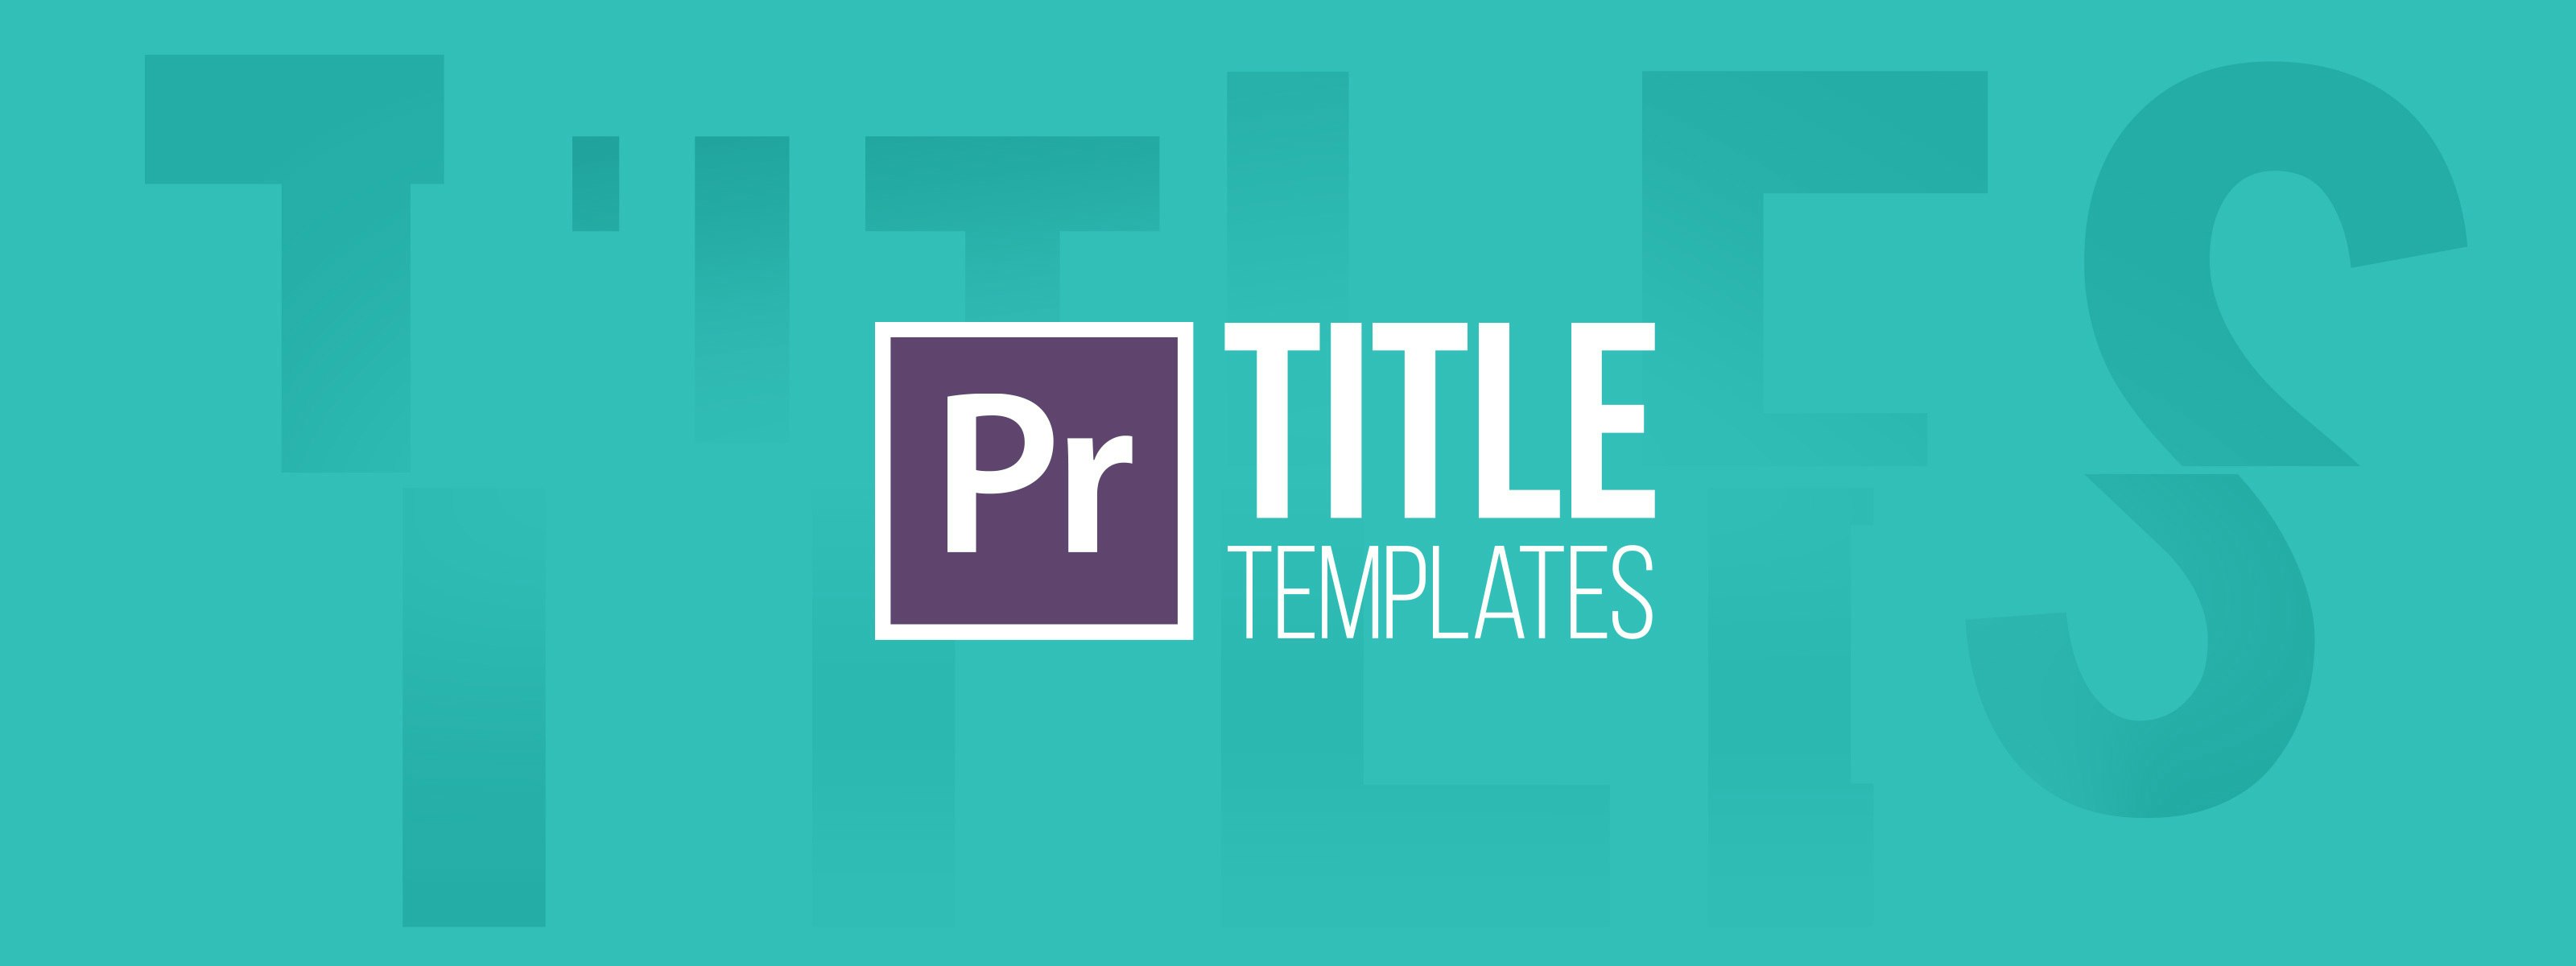 Templates For Adobe Premiere Pro